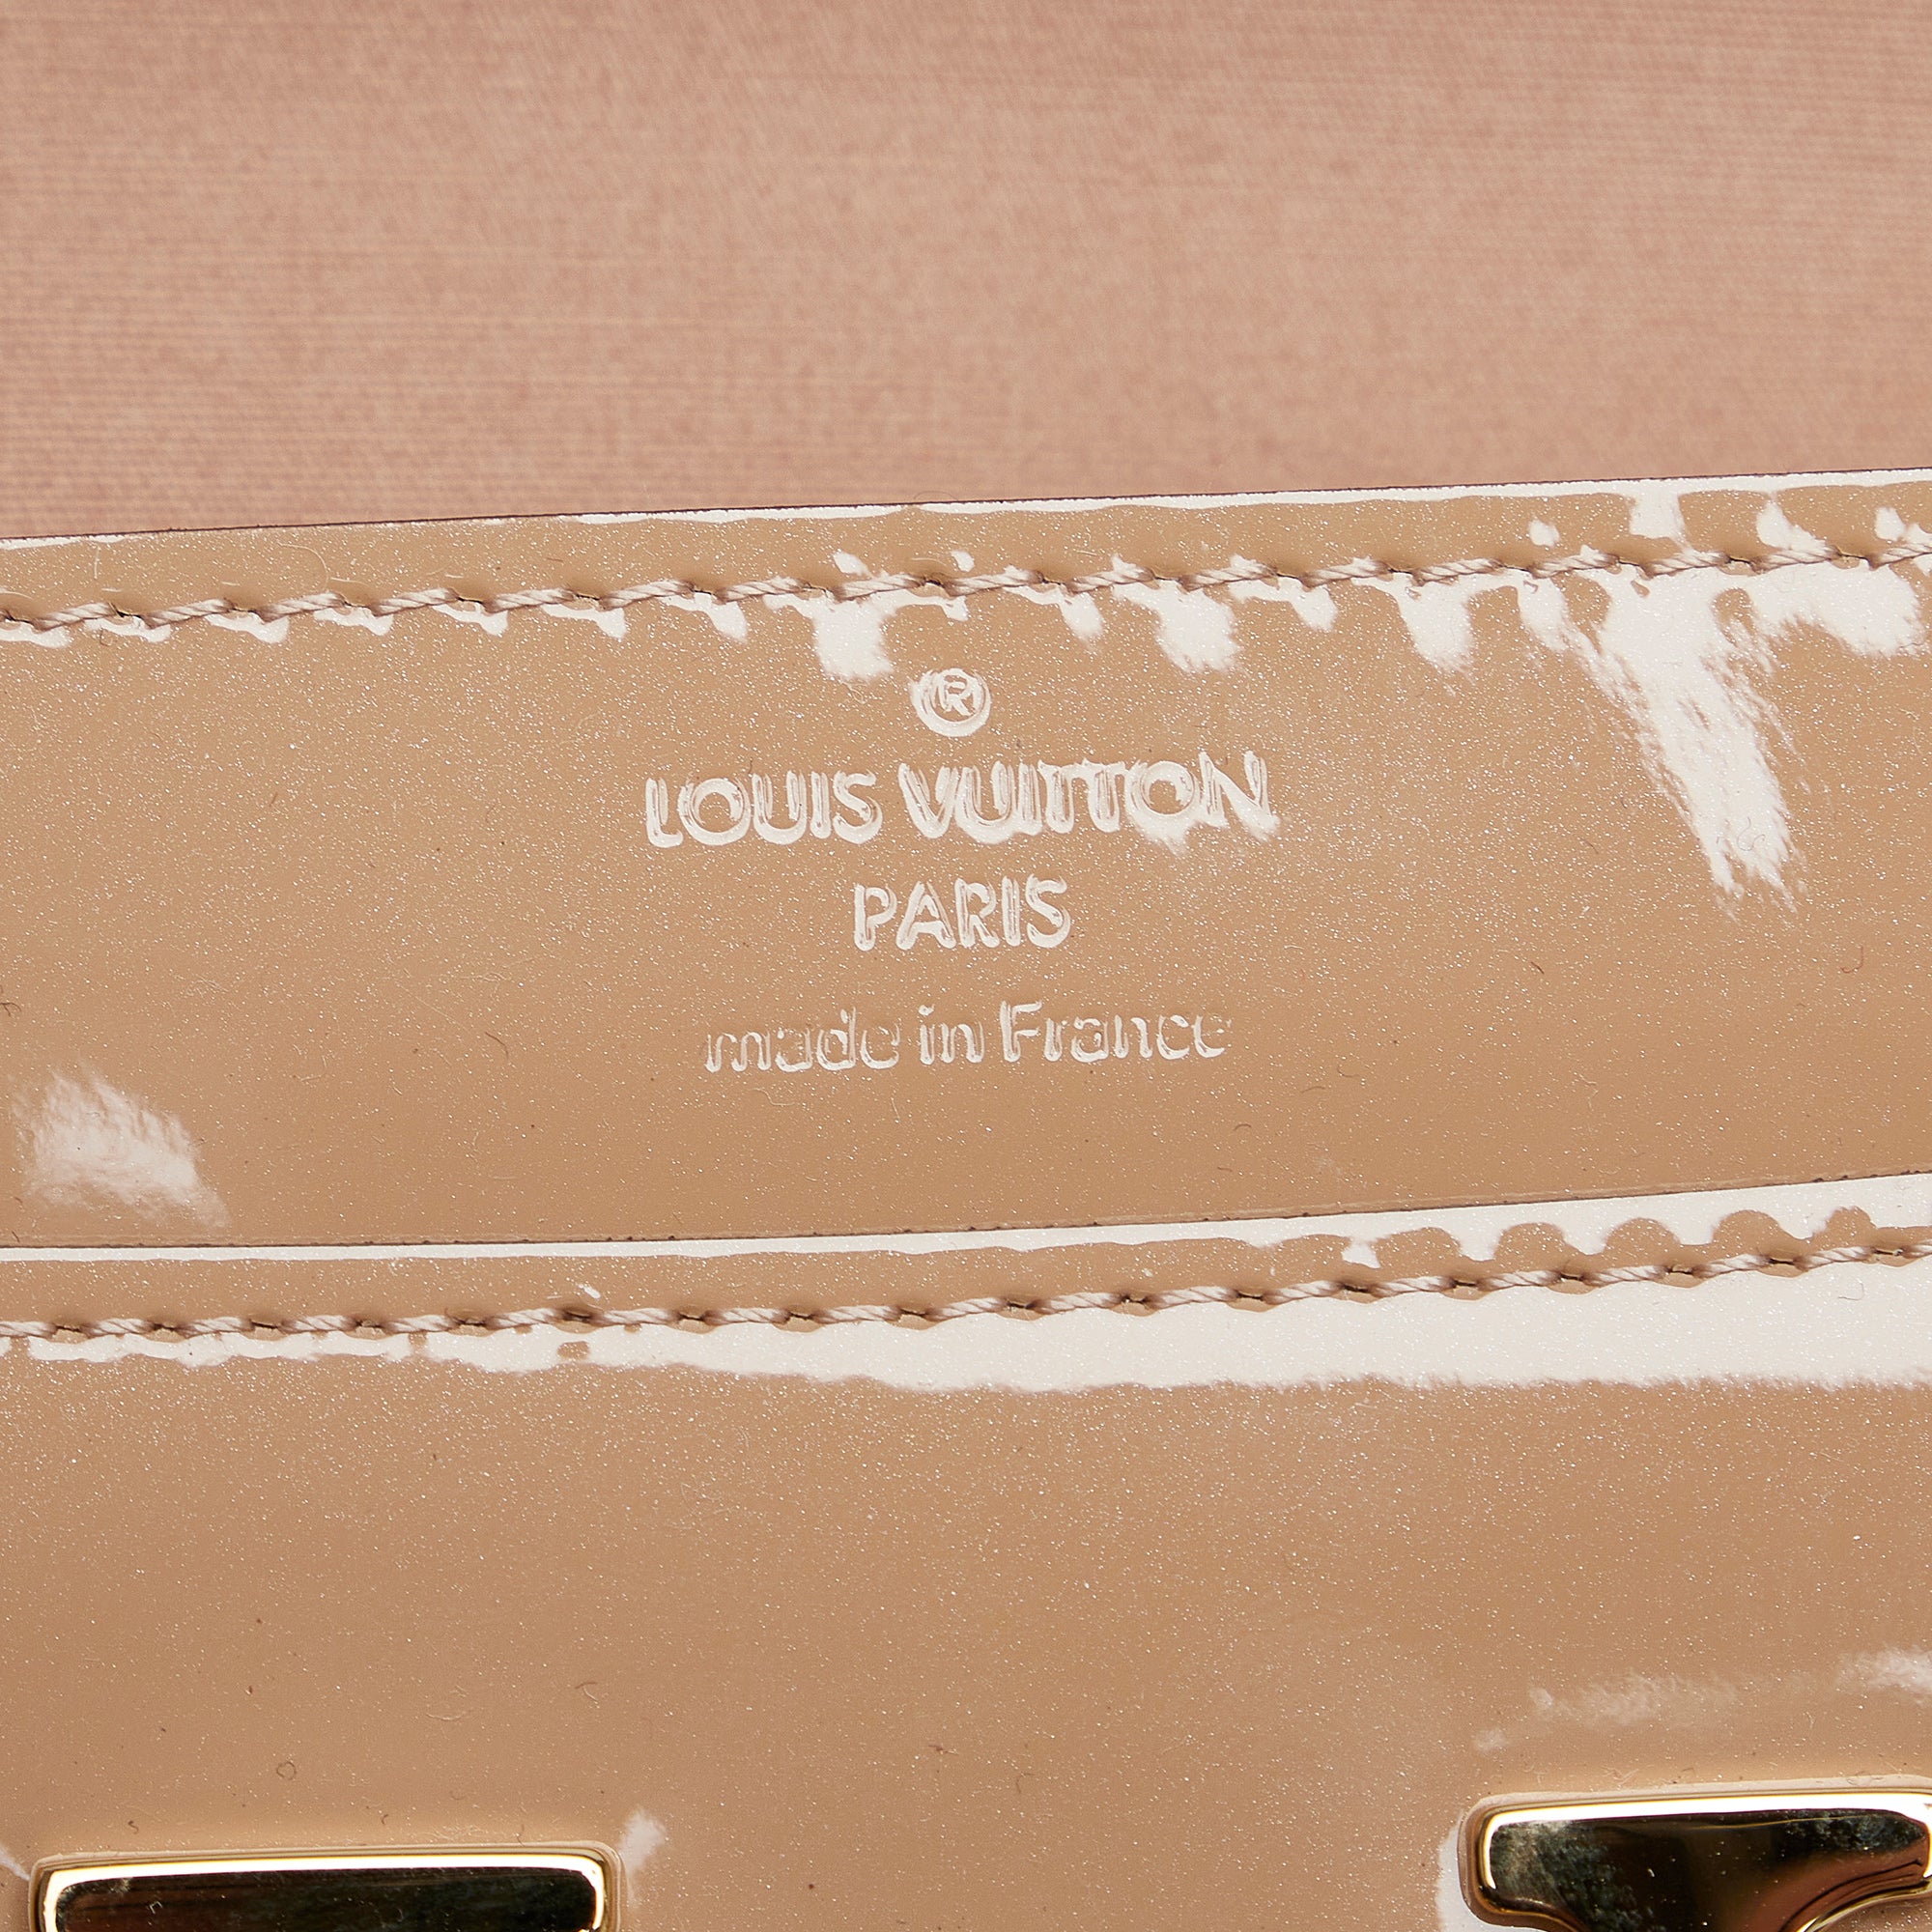 Brown Louis Vuitton Vernis Louise Clutch Bag – Designer Revival